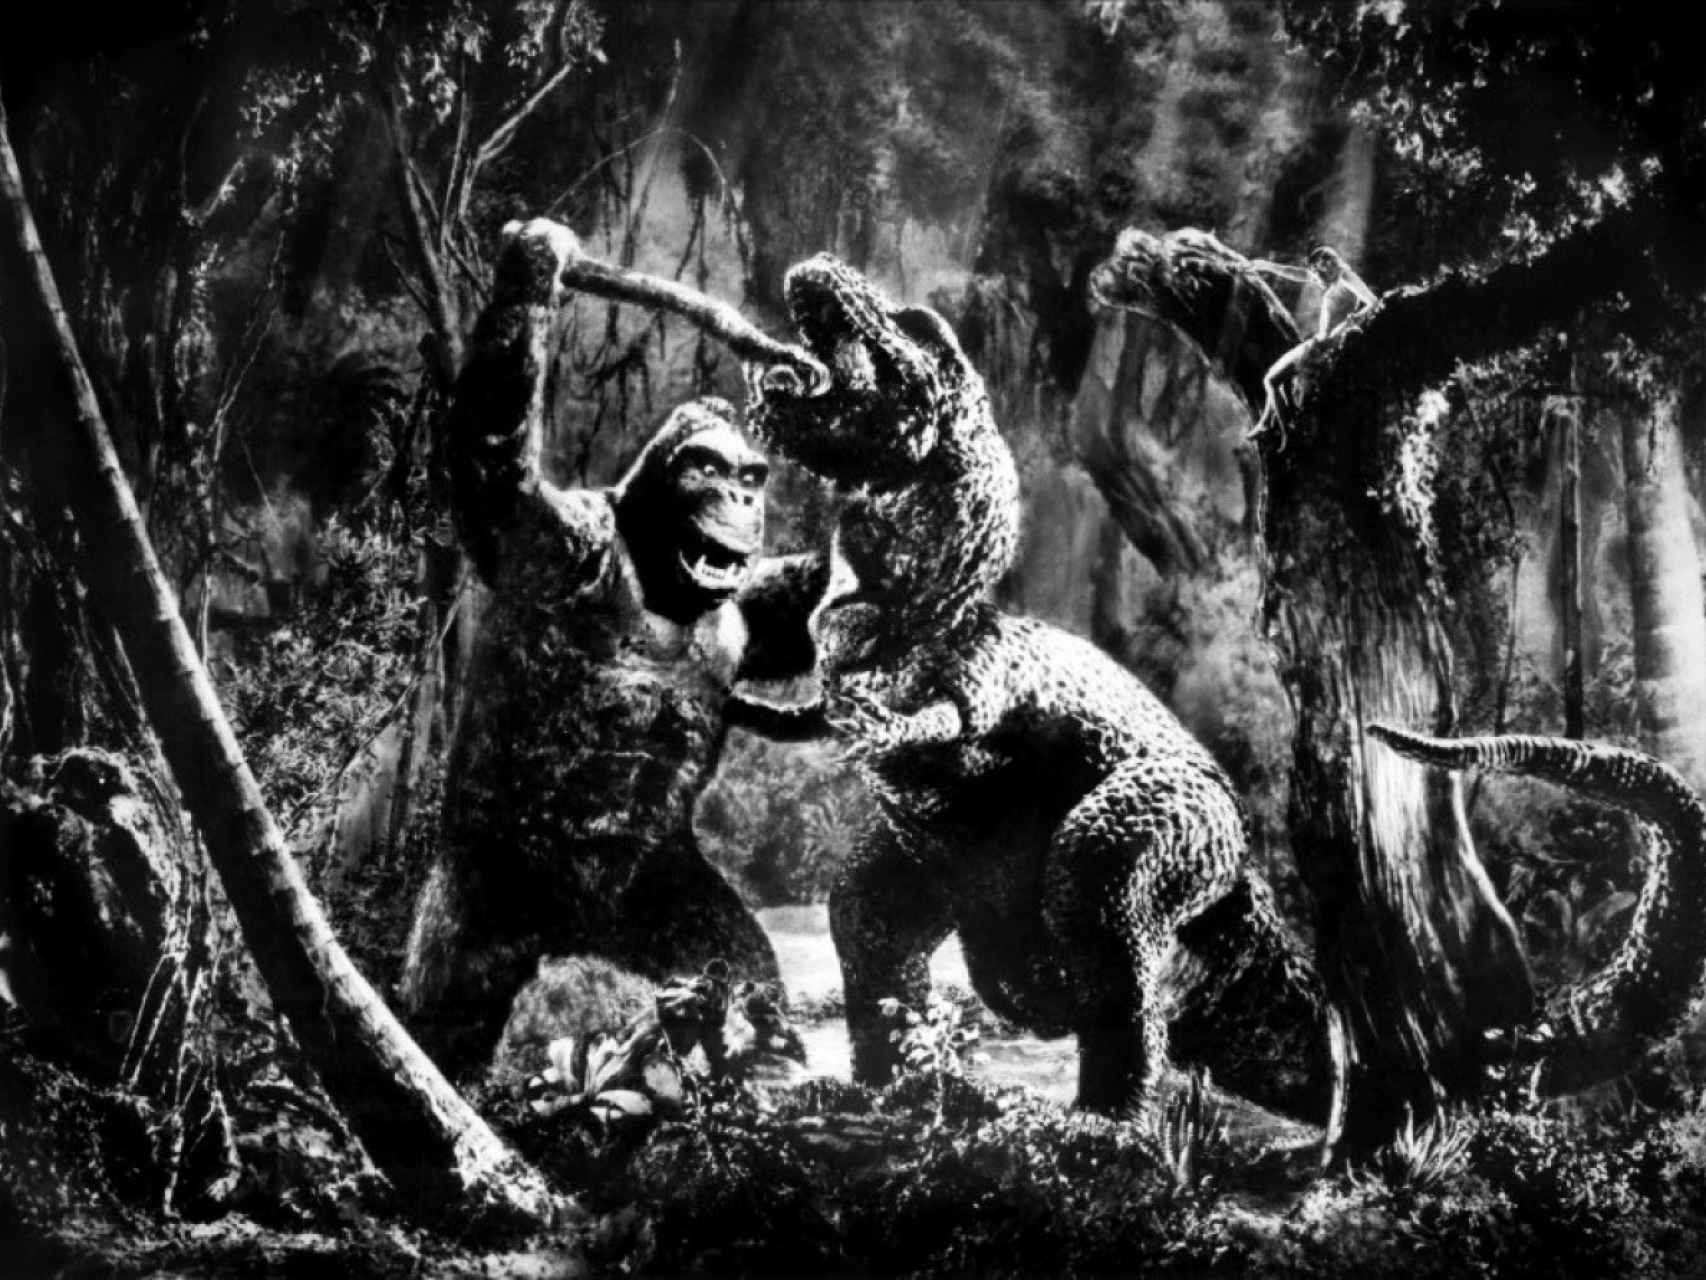 Fotograma de la película King Kong, donde el gorila lucha contra un tiranosaurio.